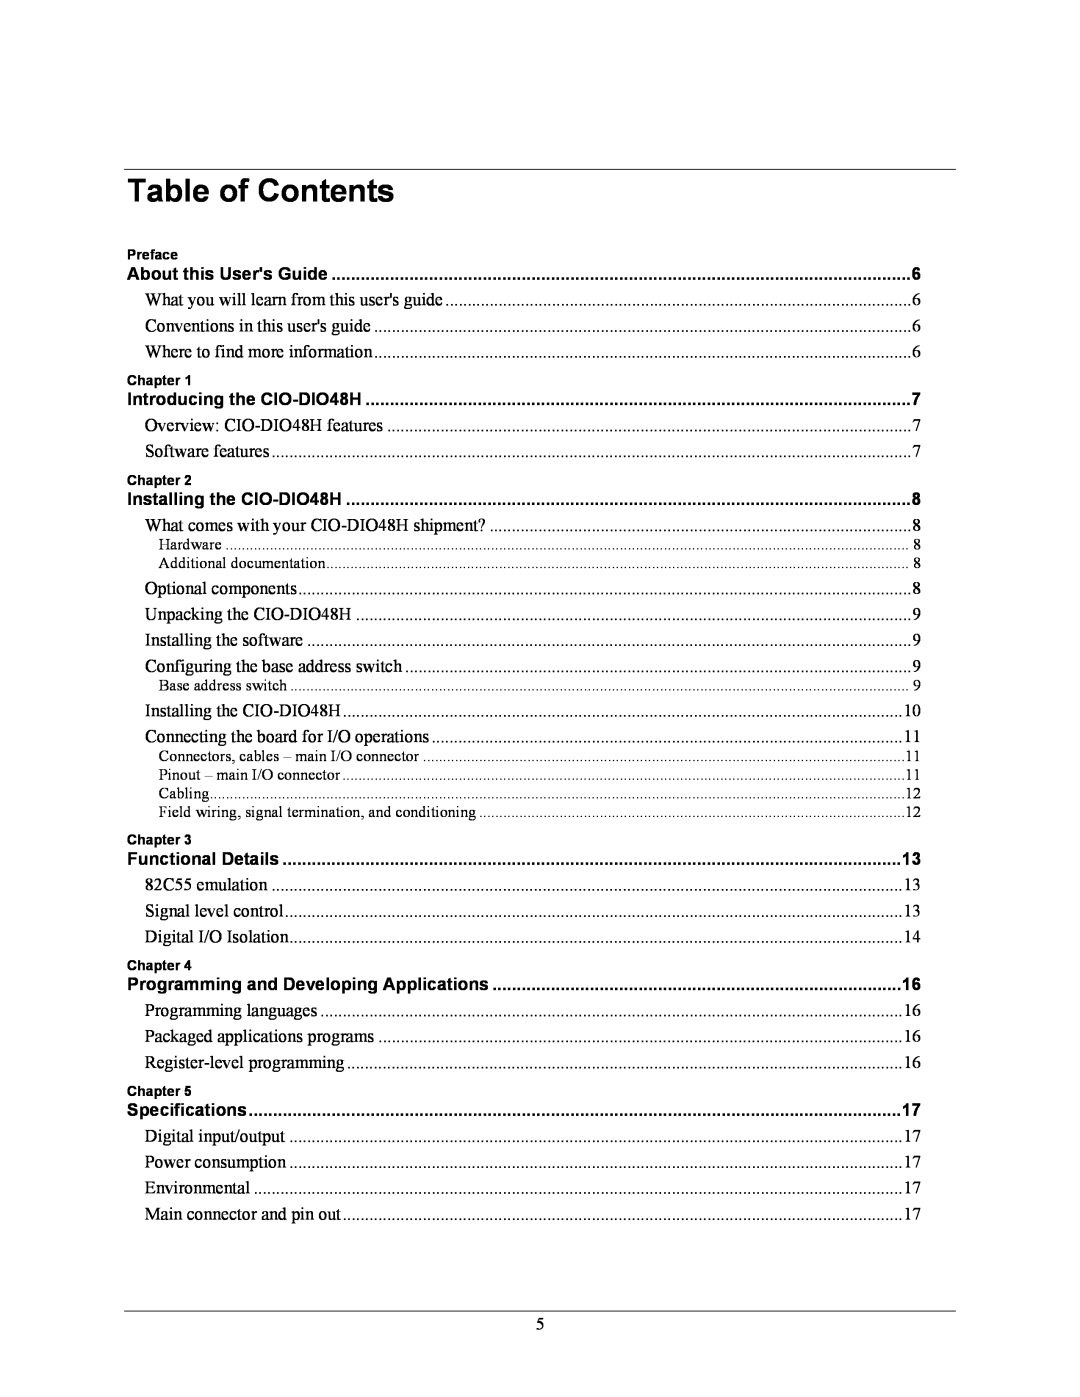 IBM CIO-DIO48H manual Table of Contents 